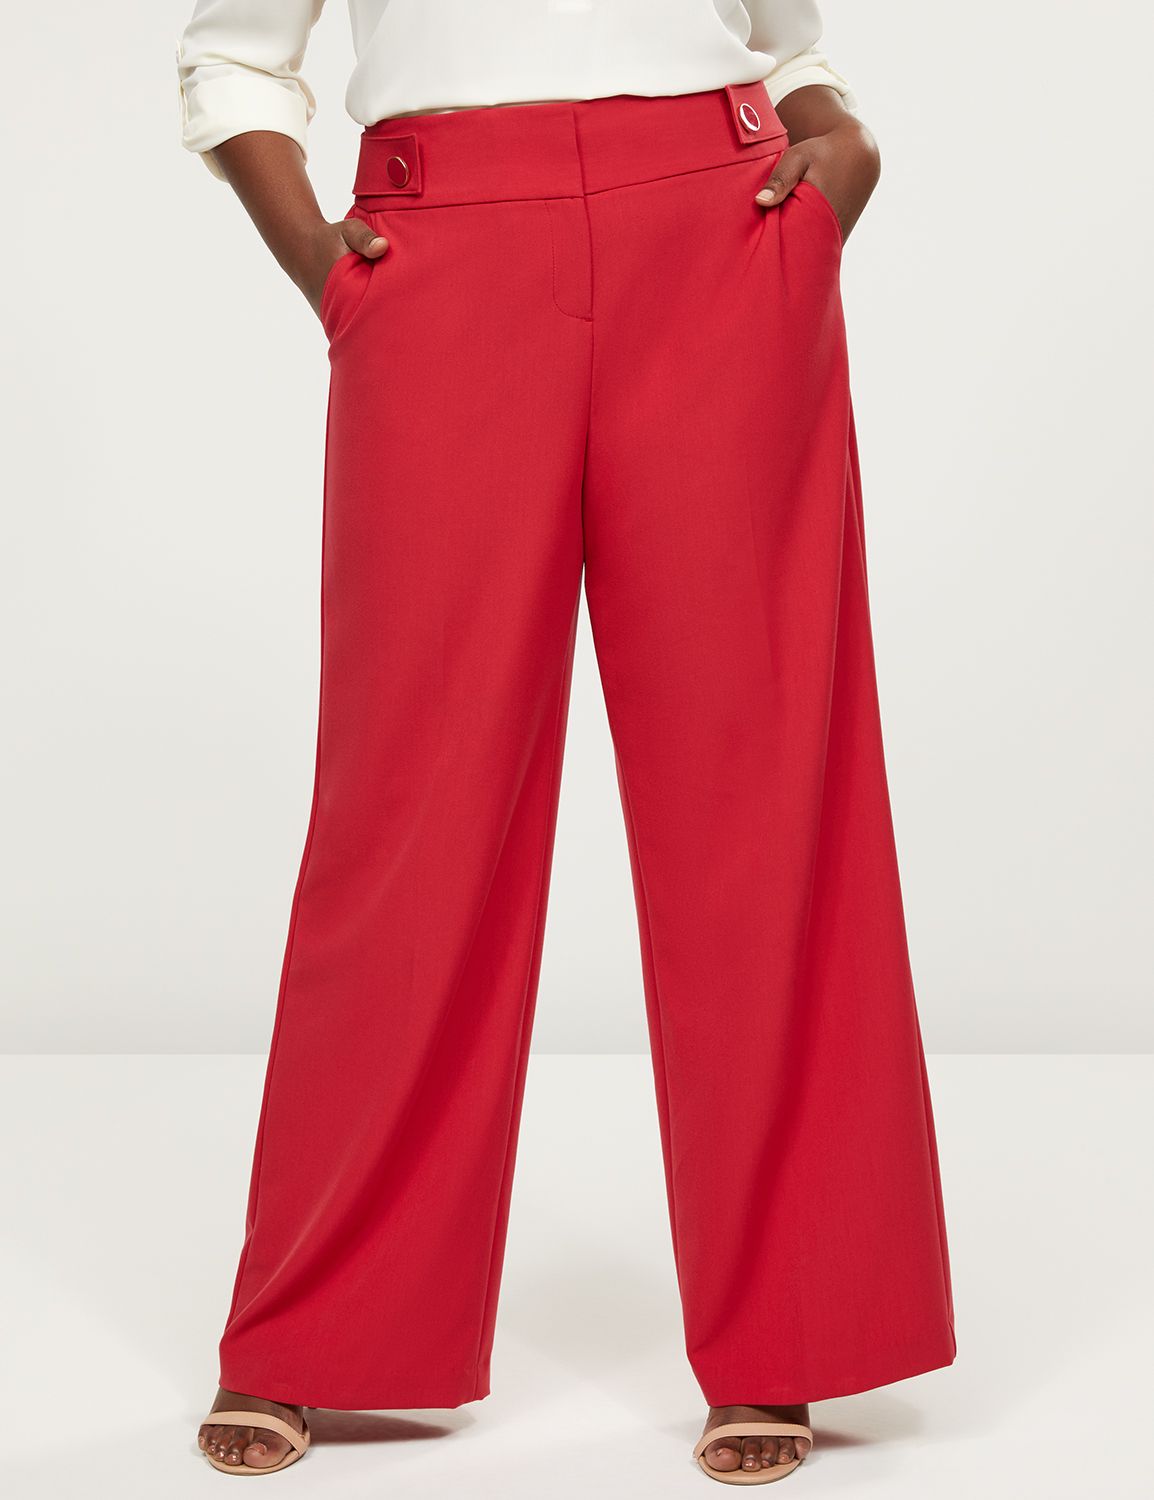 Red Plus Size Women's Pants | Lane Bryant